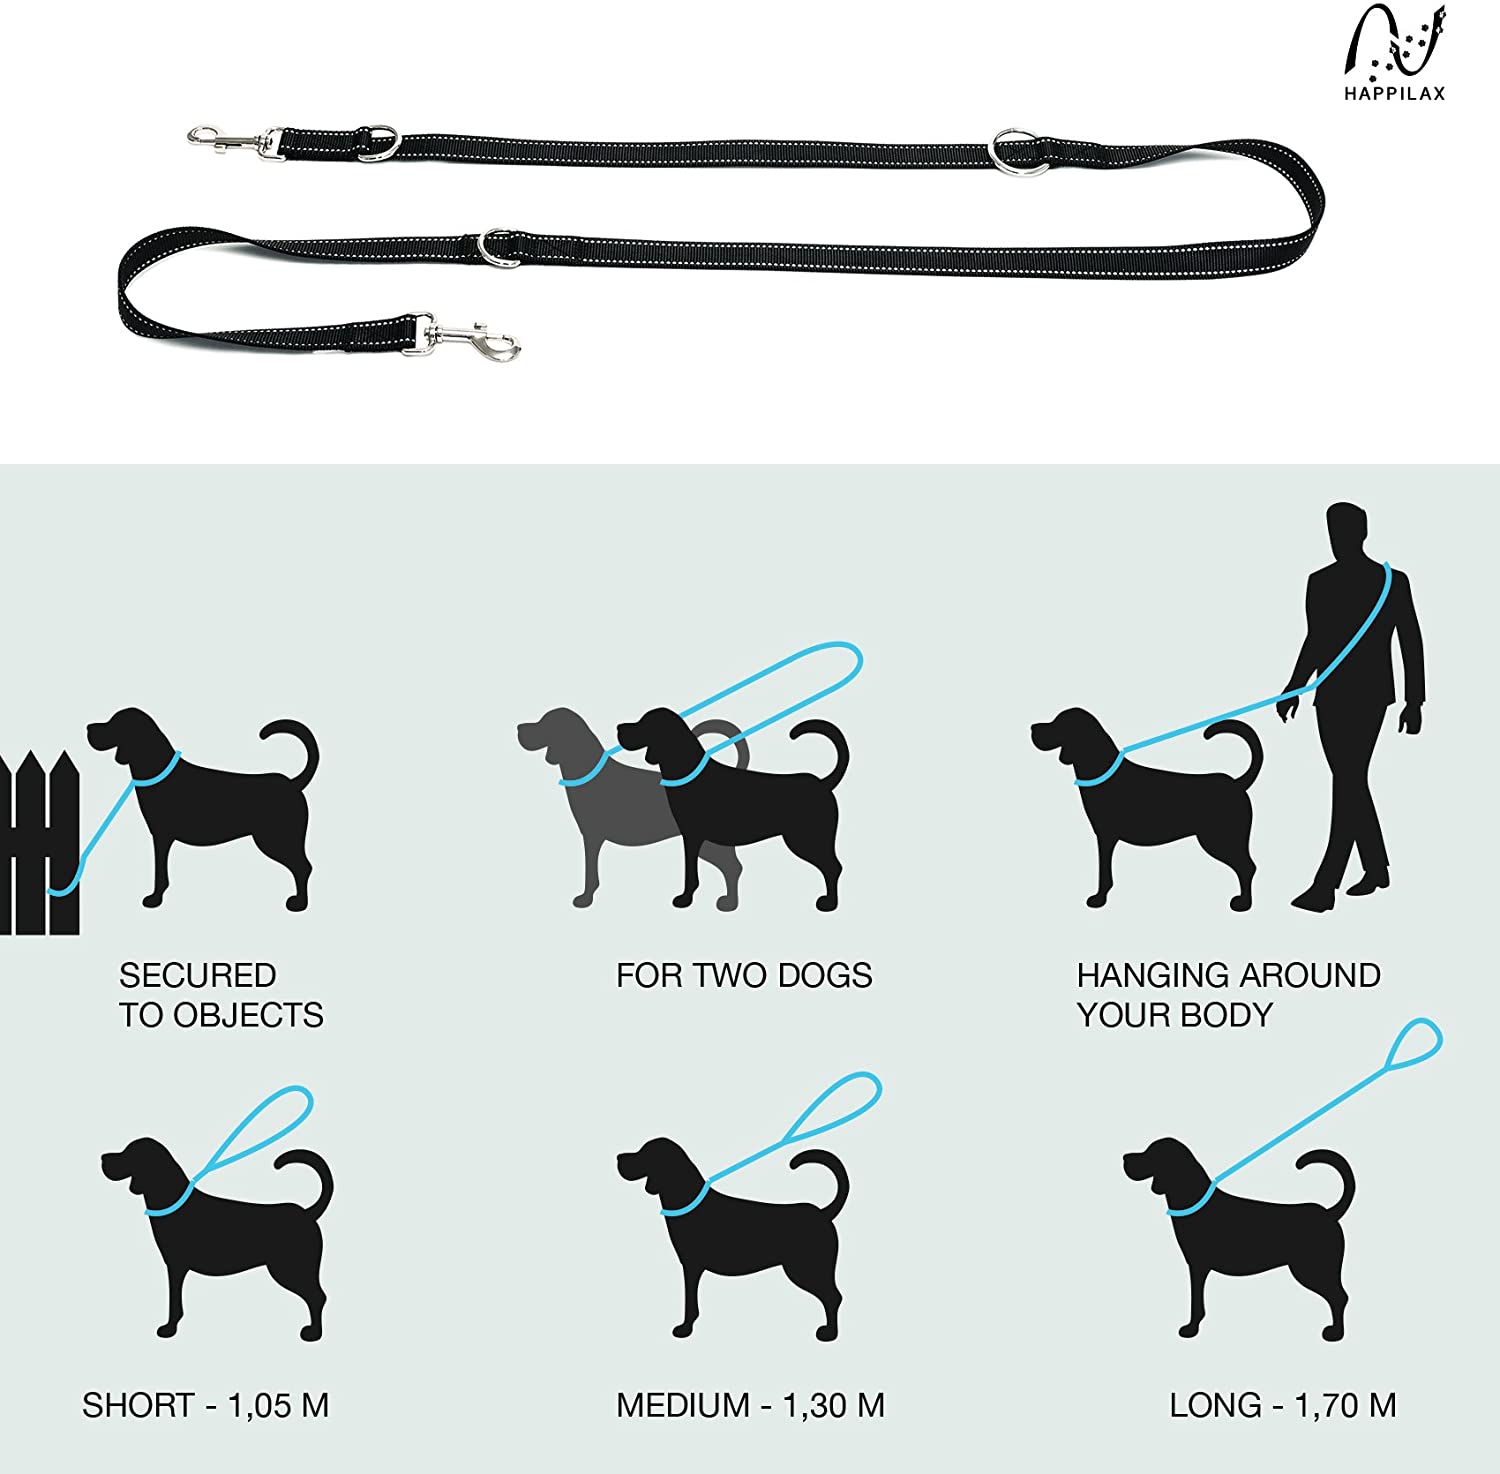  Happilax correa perro multiposición, ajustable en 3 longitudes o doble para 2 perros, negra, 2 m 